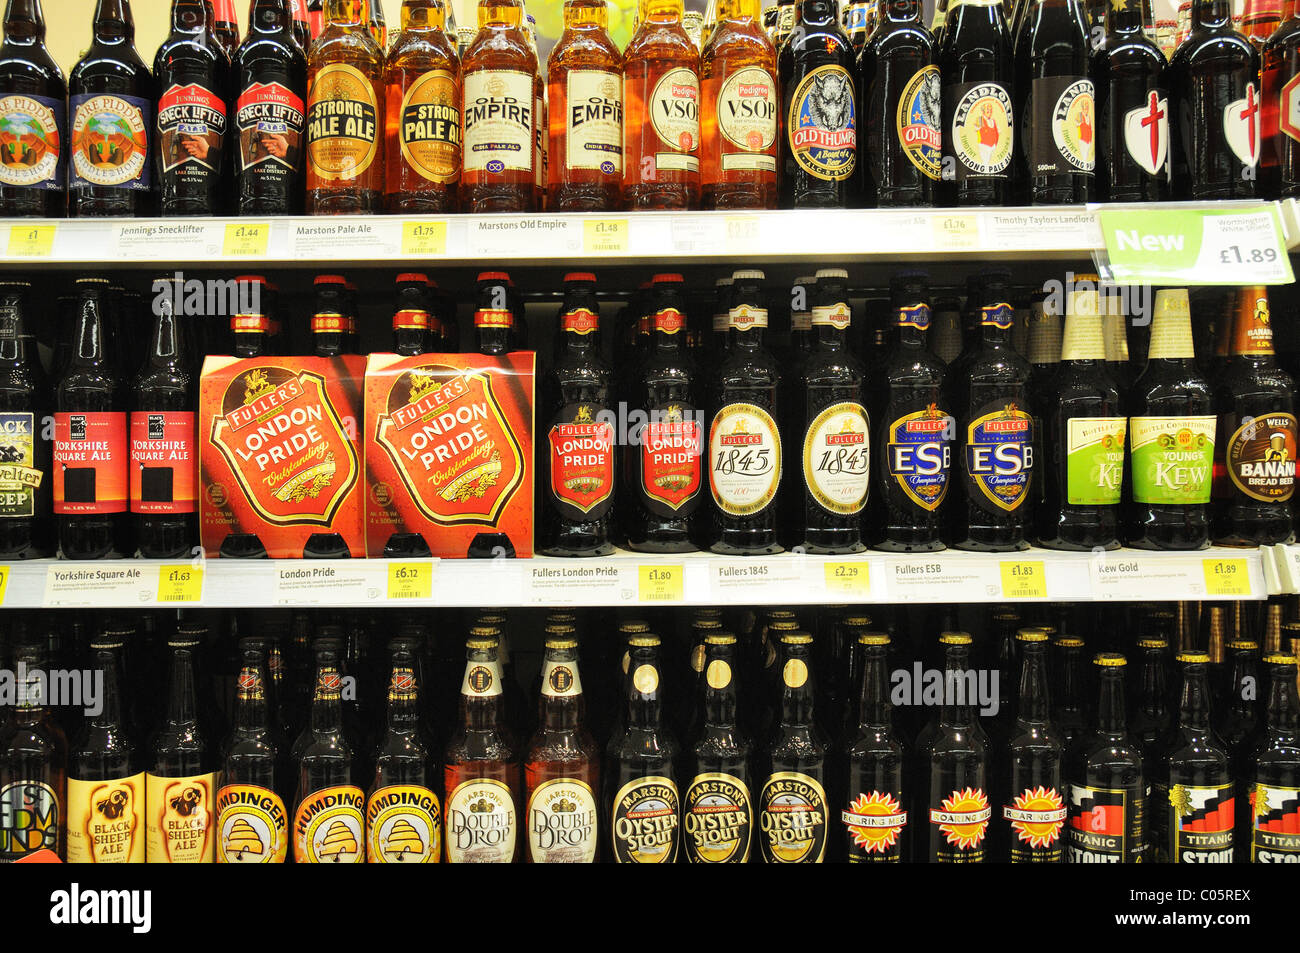 Flaschen Bier auf einem Regal in einem Supermarkt in England  Stockfotografie - Alamy